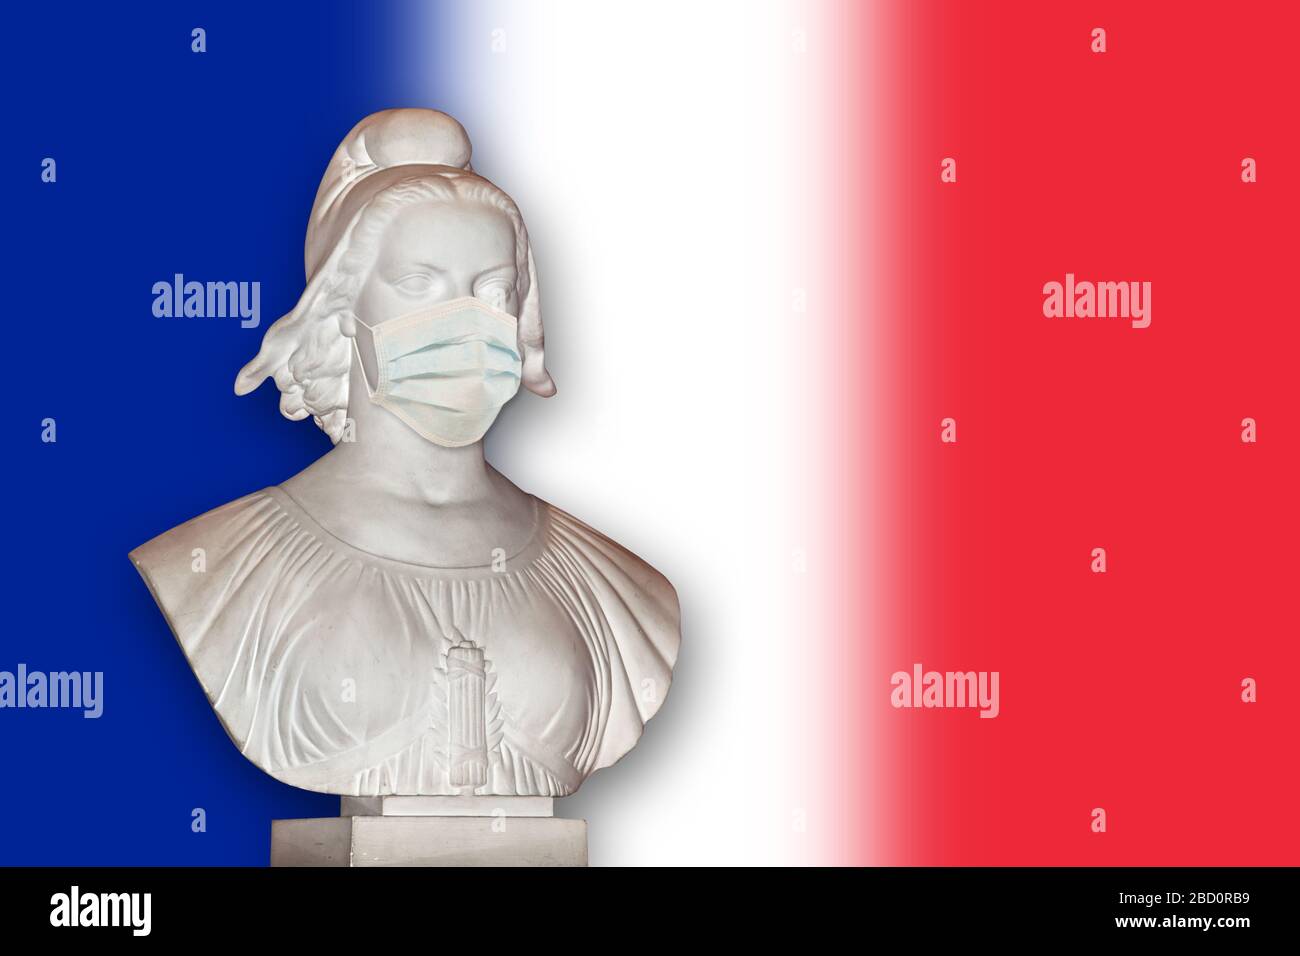 Statua di Marianne con una maschera chirurgica, simbolo della repubblica francese che si occupa di coronavirus covid-19 epidemia Foto Stock